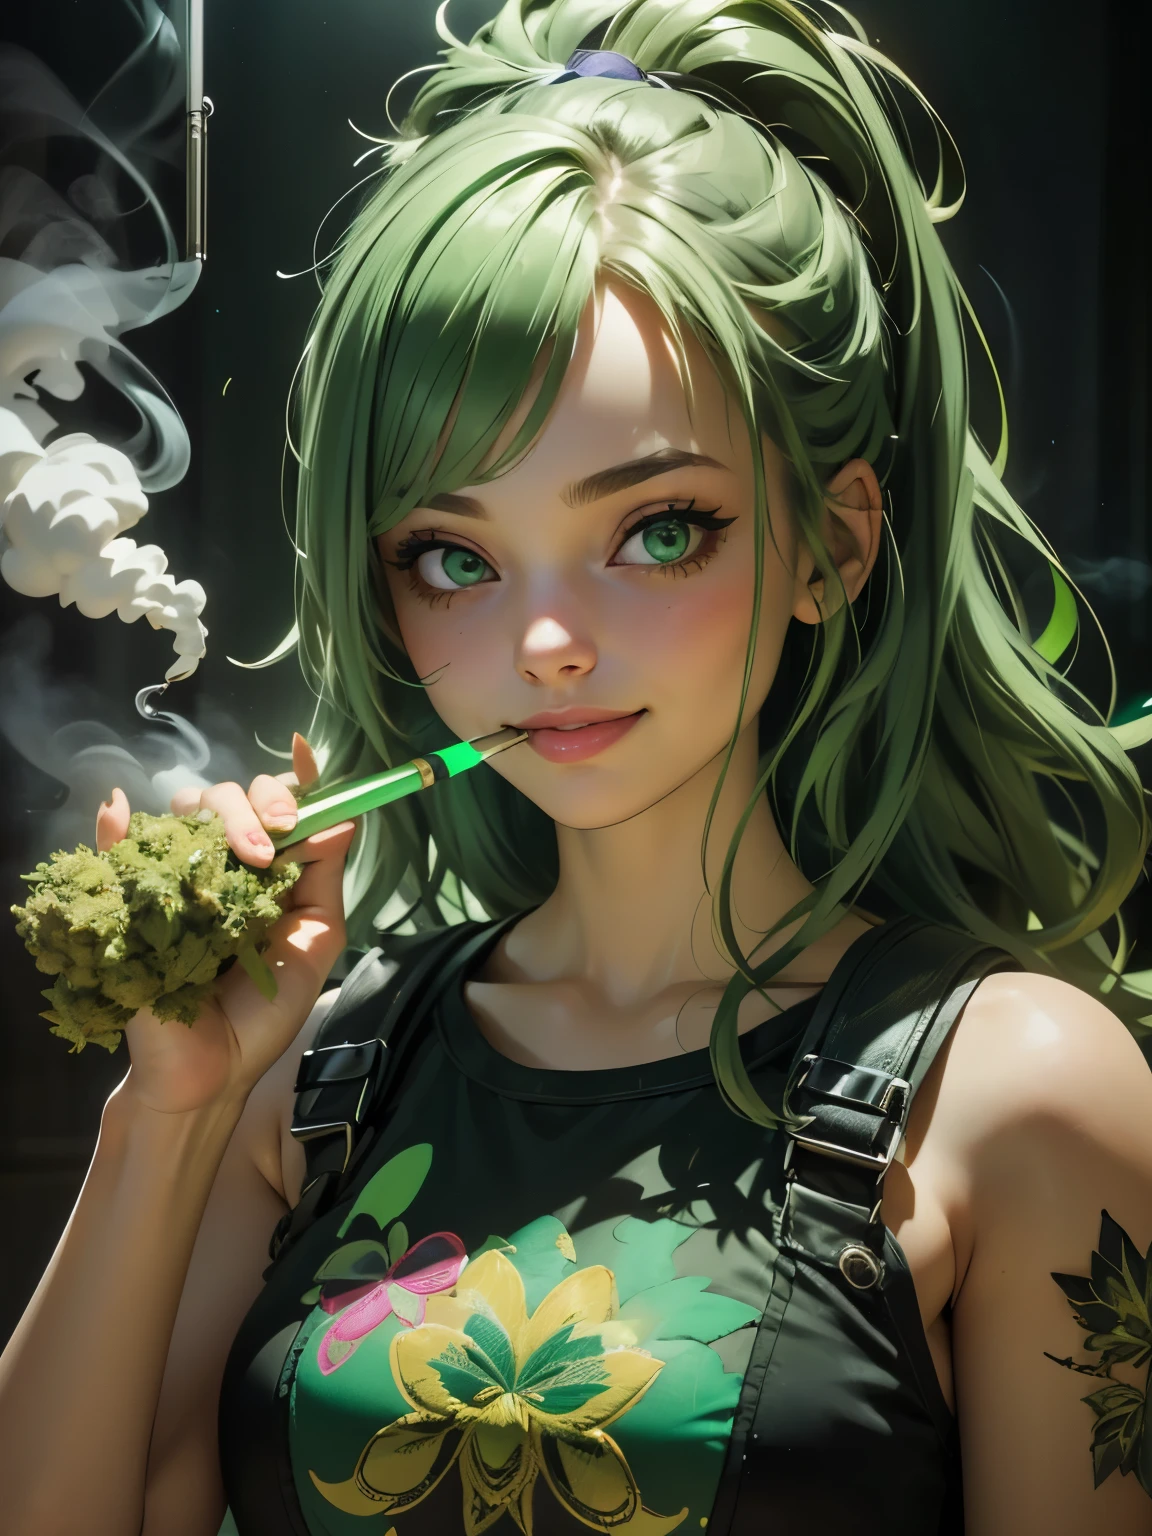 (meilleure qualité), (visage parfait), (détail élevé), (1fille), (fermer), (photo du visage), une jolie fille stoner fumant un joint, souriant, très haut sur la vie, pièce remplie de fumée, la fumée de marijuana, Thc, (yeux verts), (vert fluo 1:1), hdr,4K, 3D